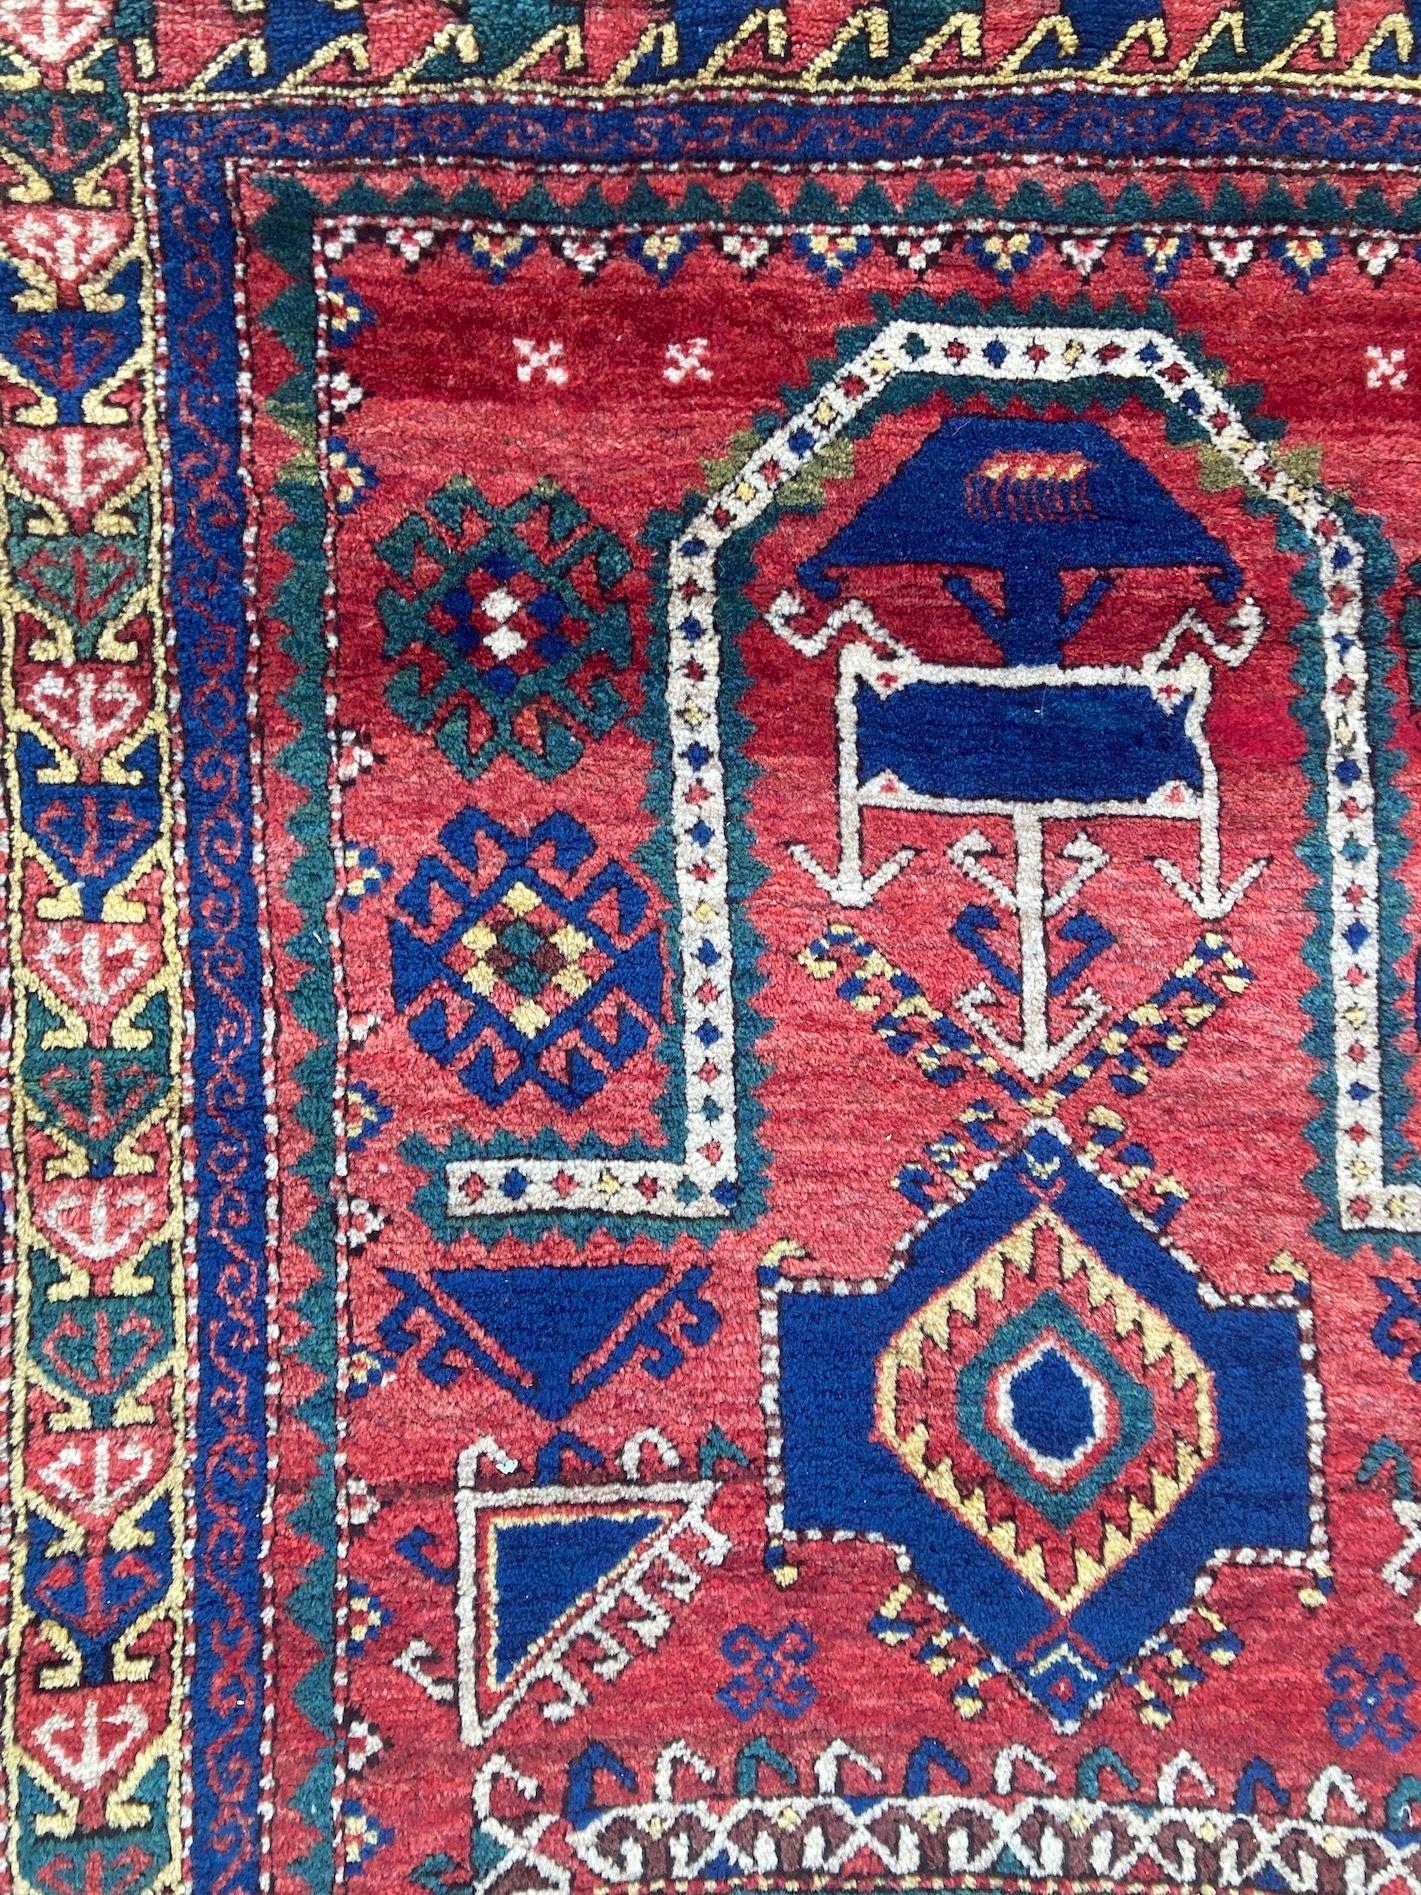 Antique Caucasian Fachralo Kazak Prayer Rug 2.48m x 1.30m For Sale 6